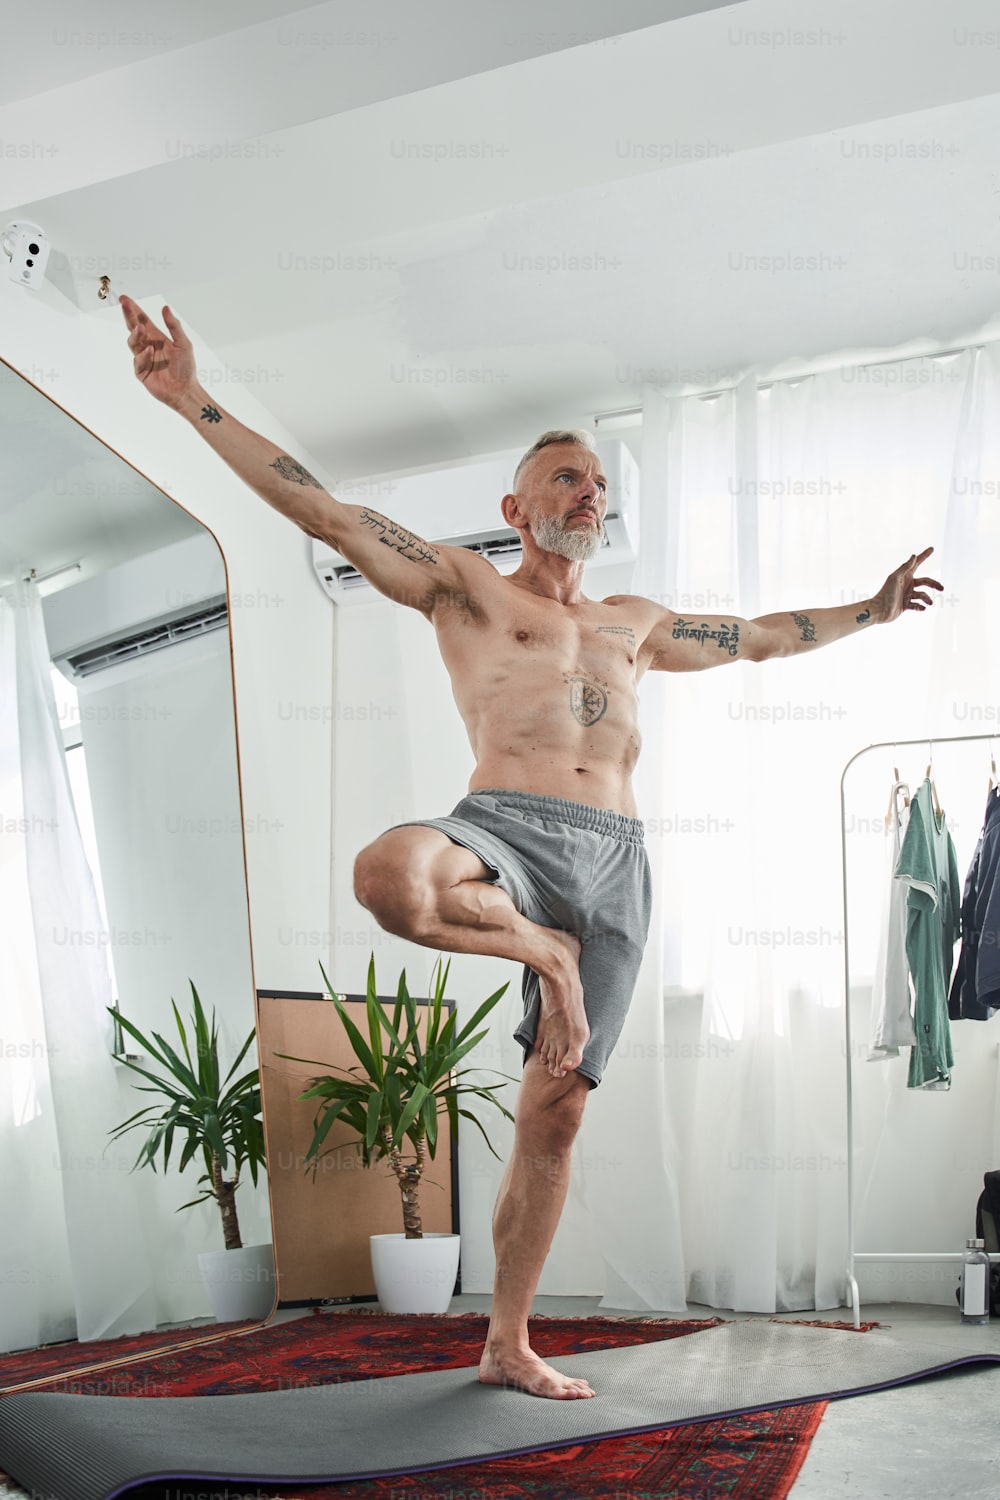 Vista angolare bassa dell'uomo calmo con torso nudo che pratica yoga in posizione da guerriero mentre si trova su una gamba nel soggiorno luminoso. Immagine